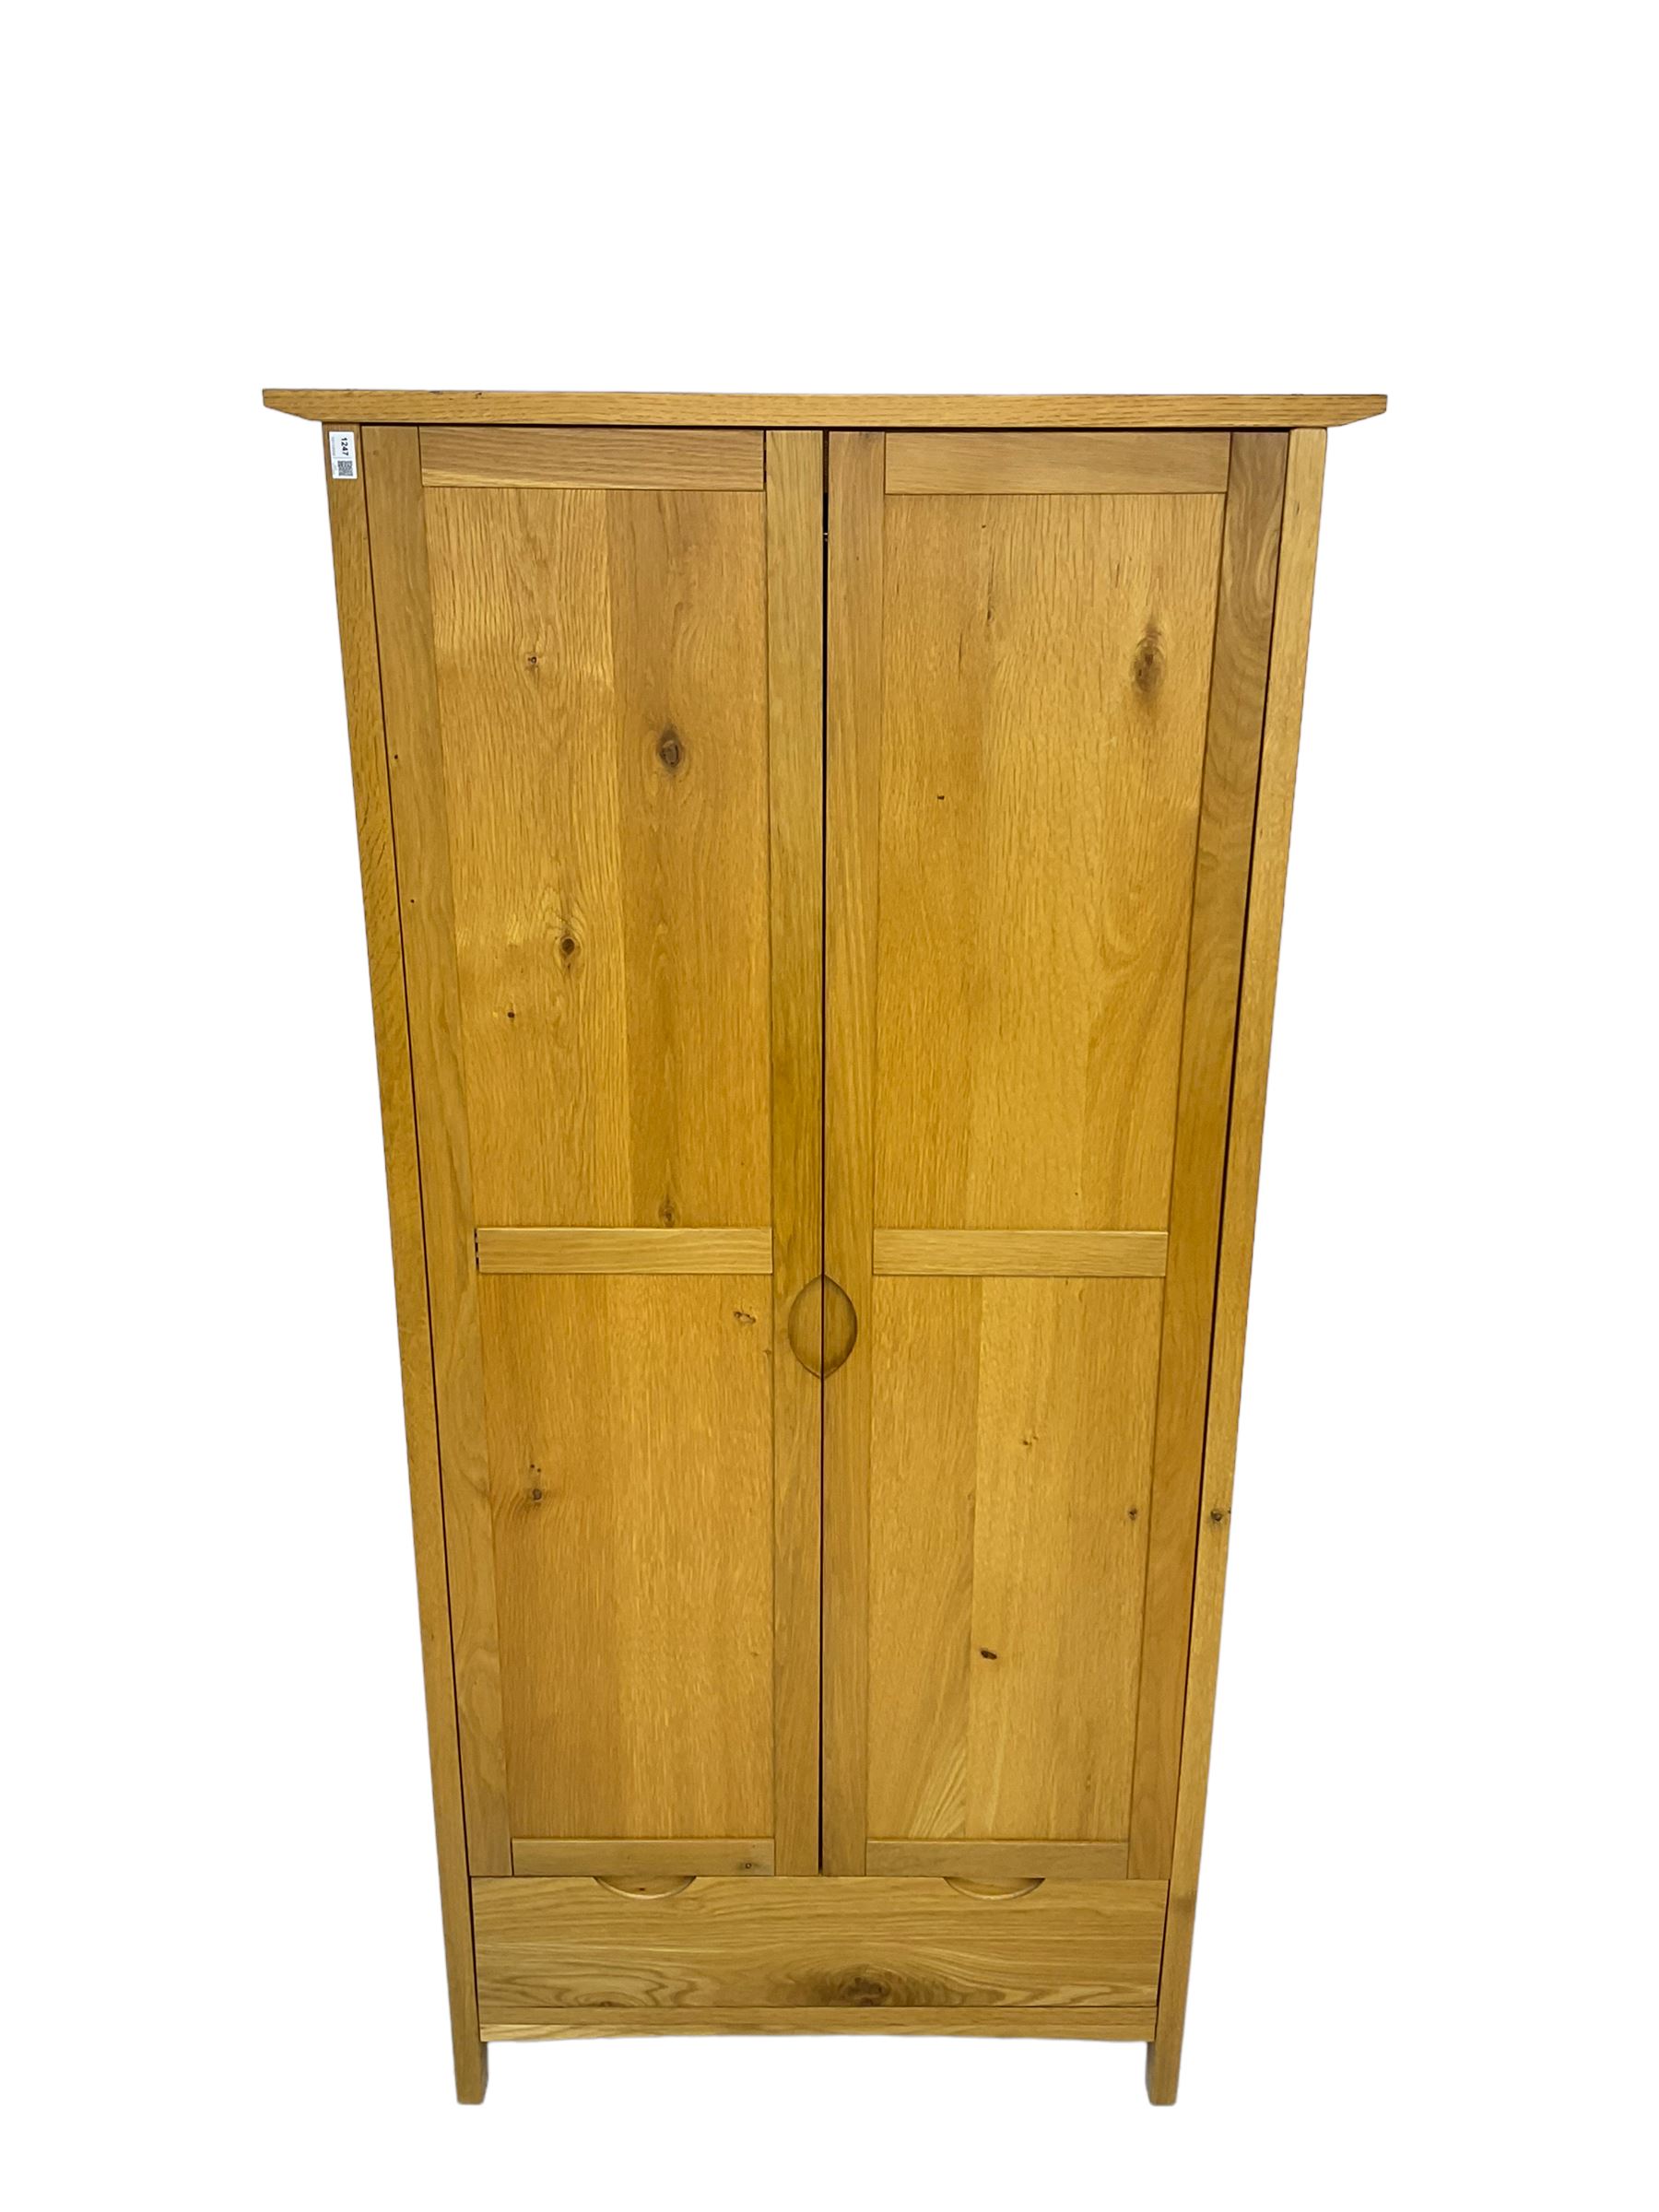 Oak double wardrobe - Image 2 of 5